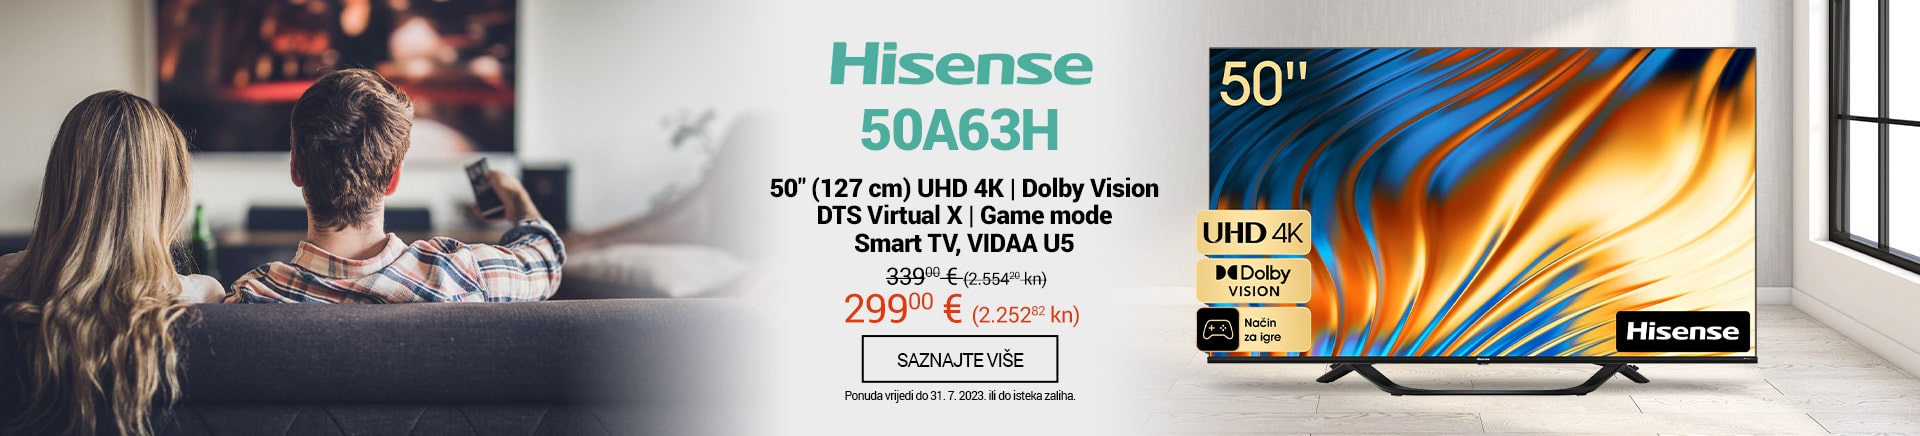 HR Hisense TV 50A63H SAMO 299 EUR MOBILE 380 X 436-min.jpg